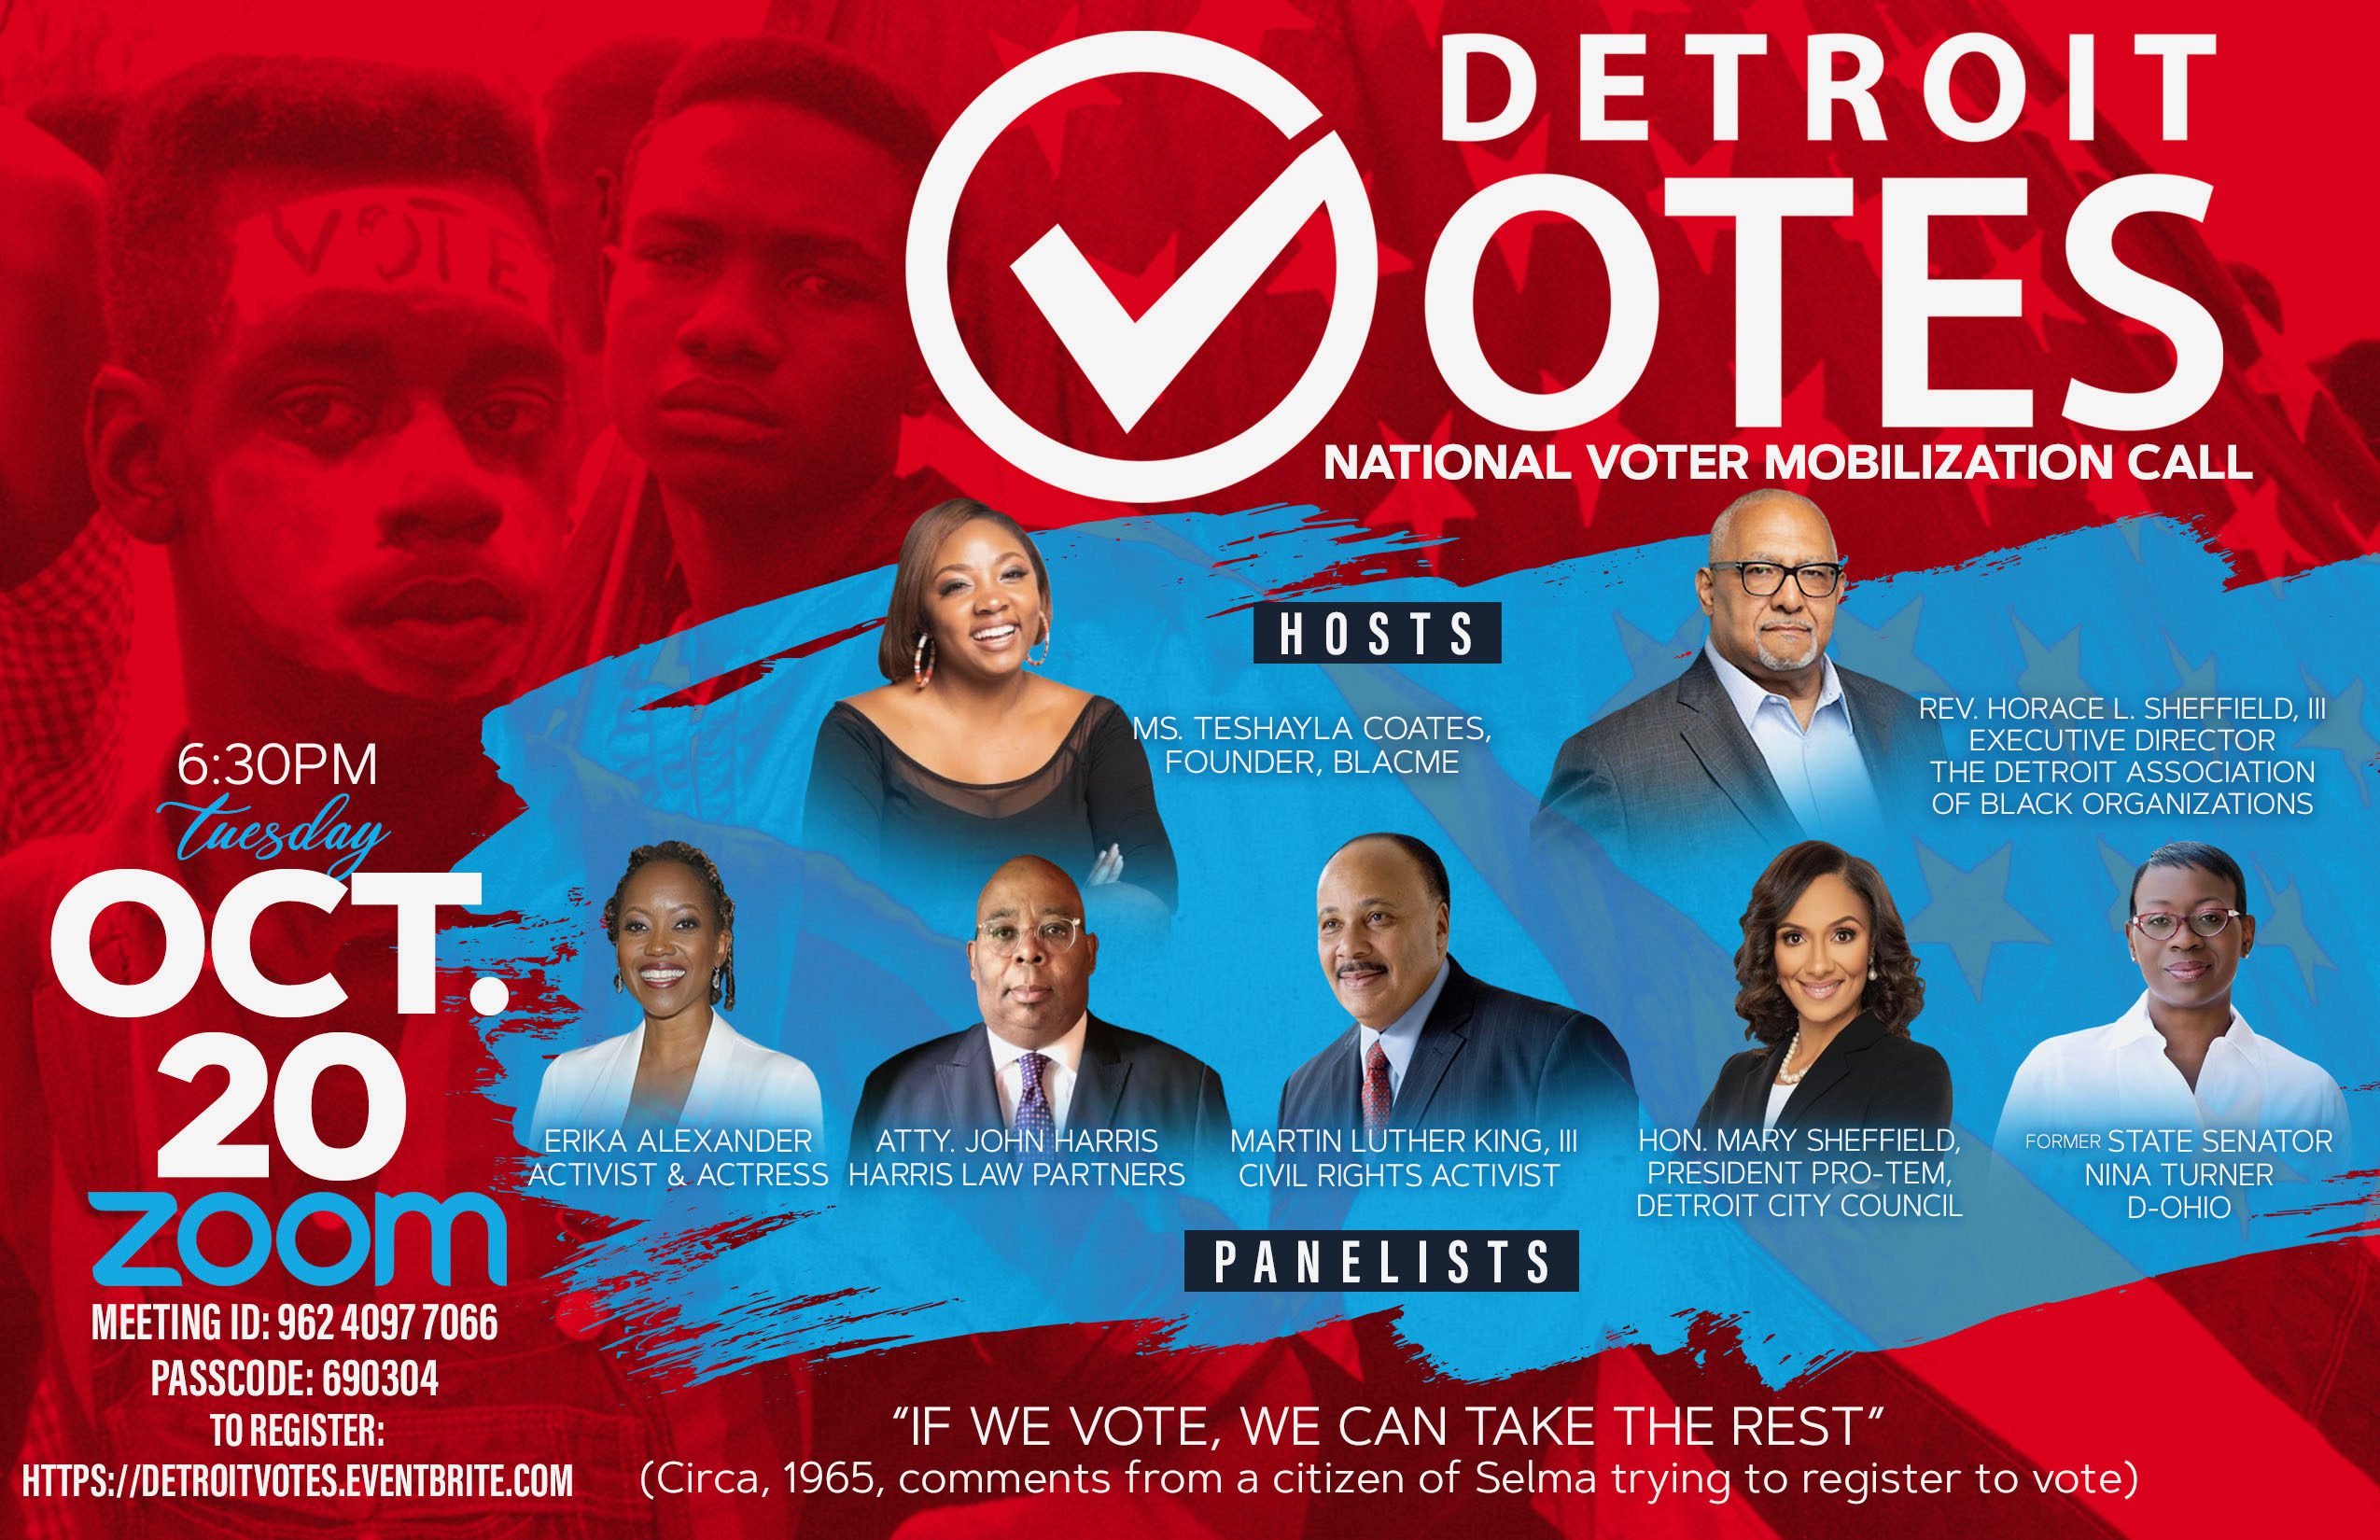 Detroit Votes The Detroit Association of Black Organizations